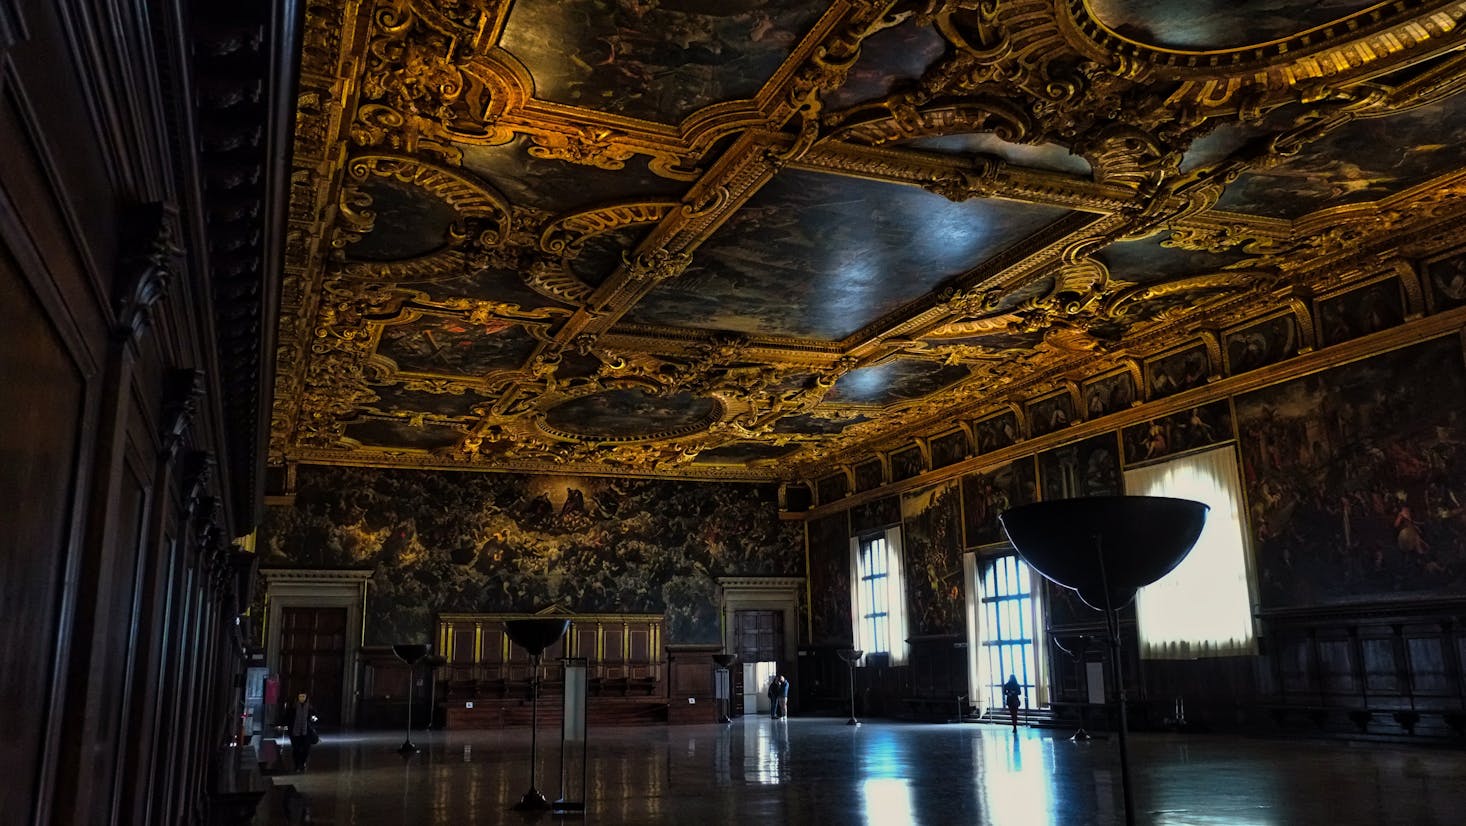 Intricate ceiling fresco in Venice